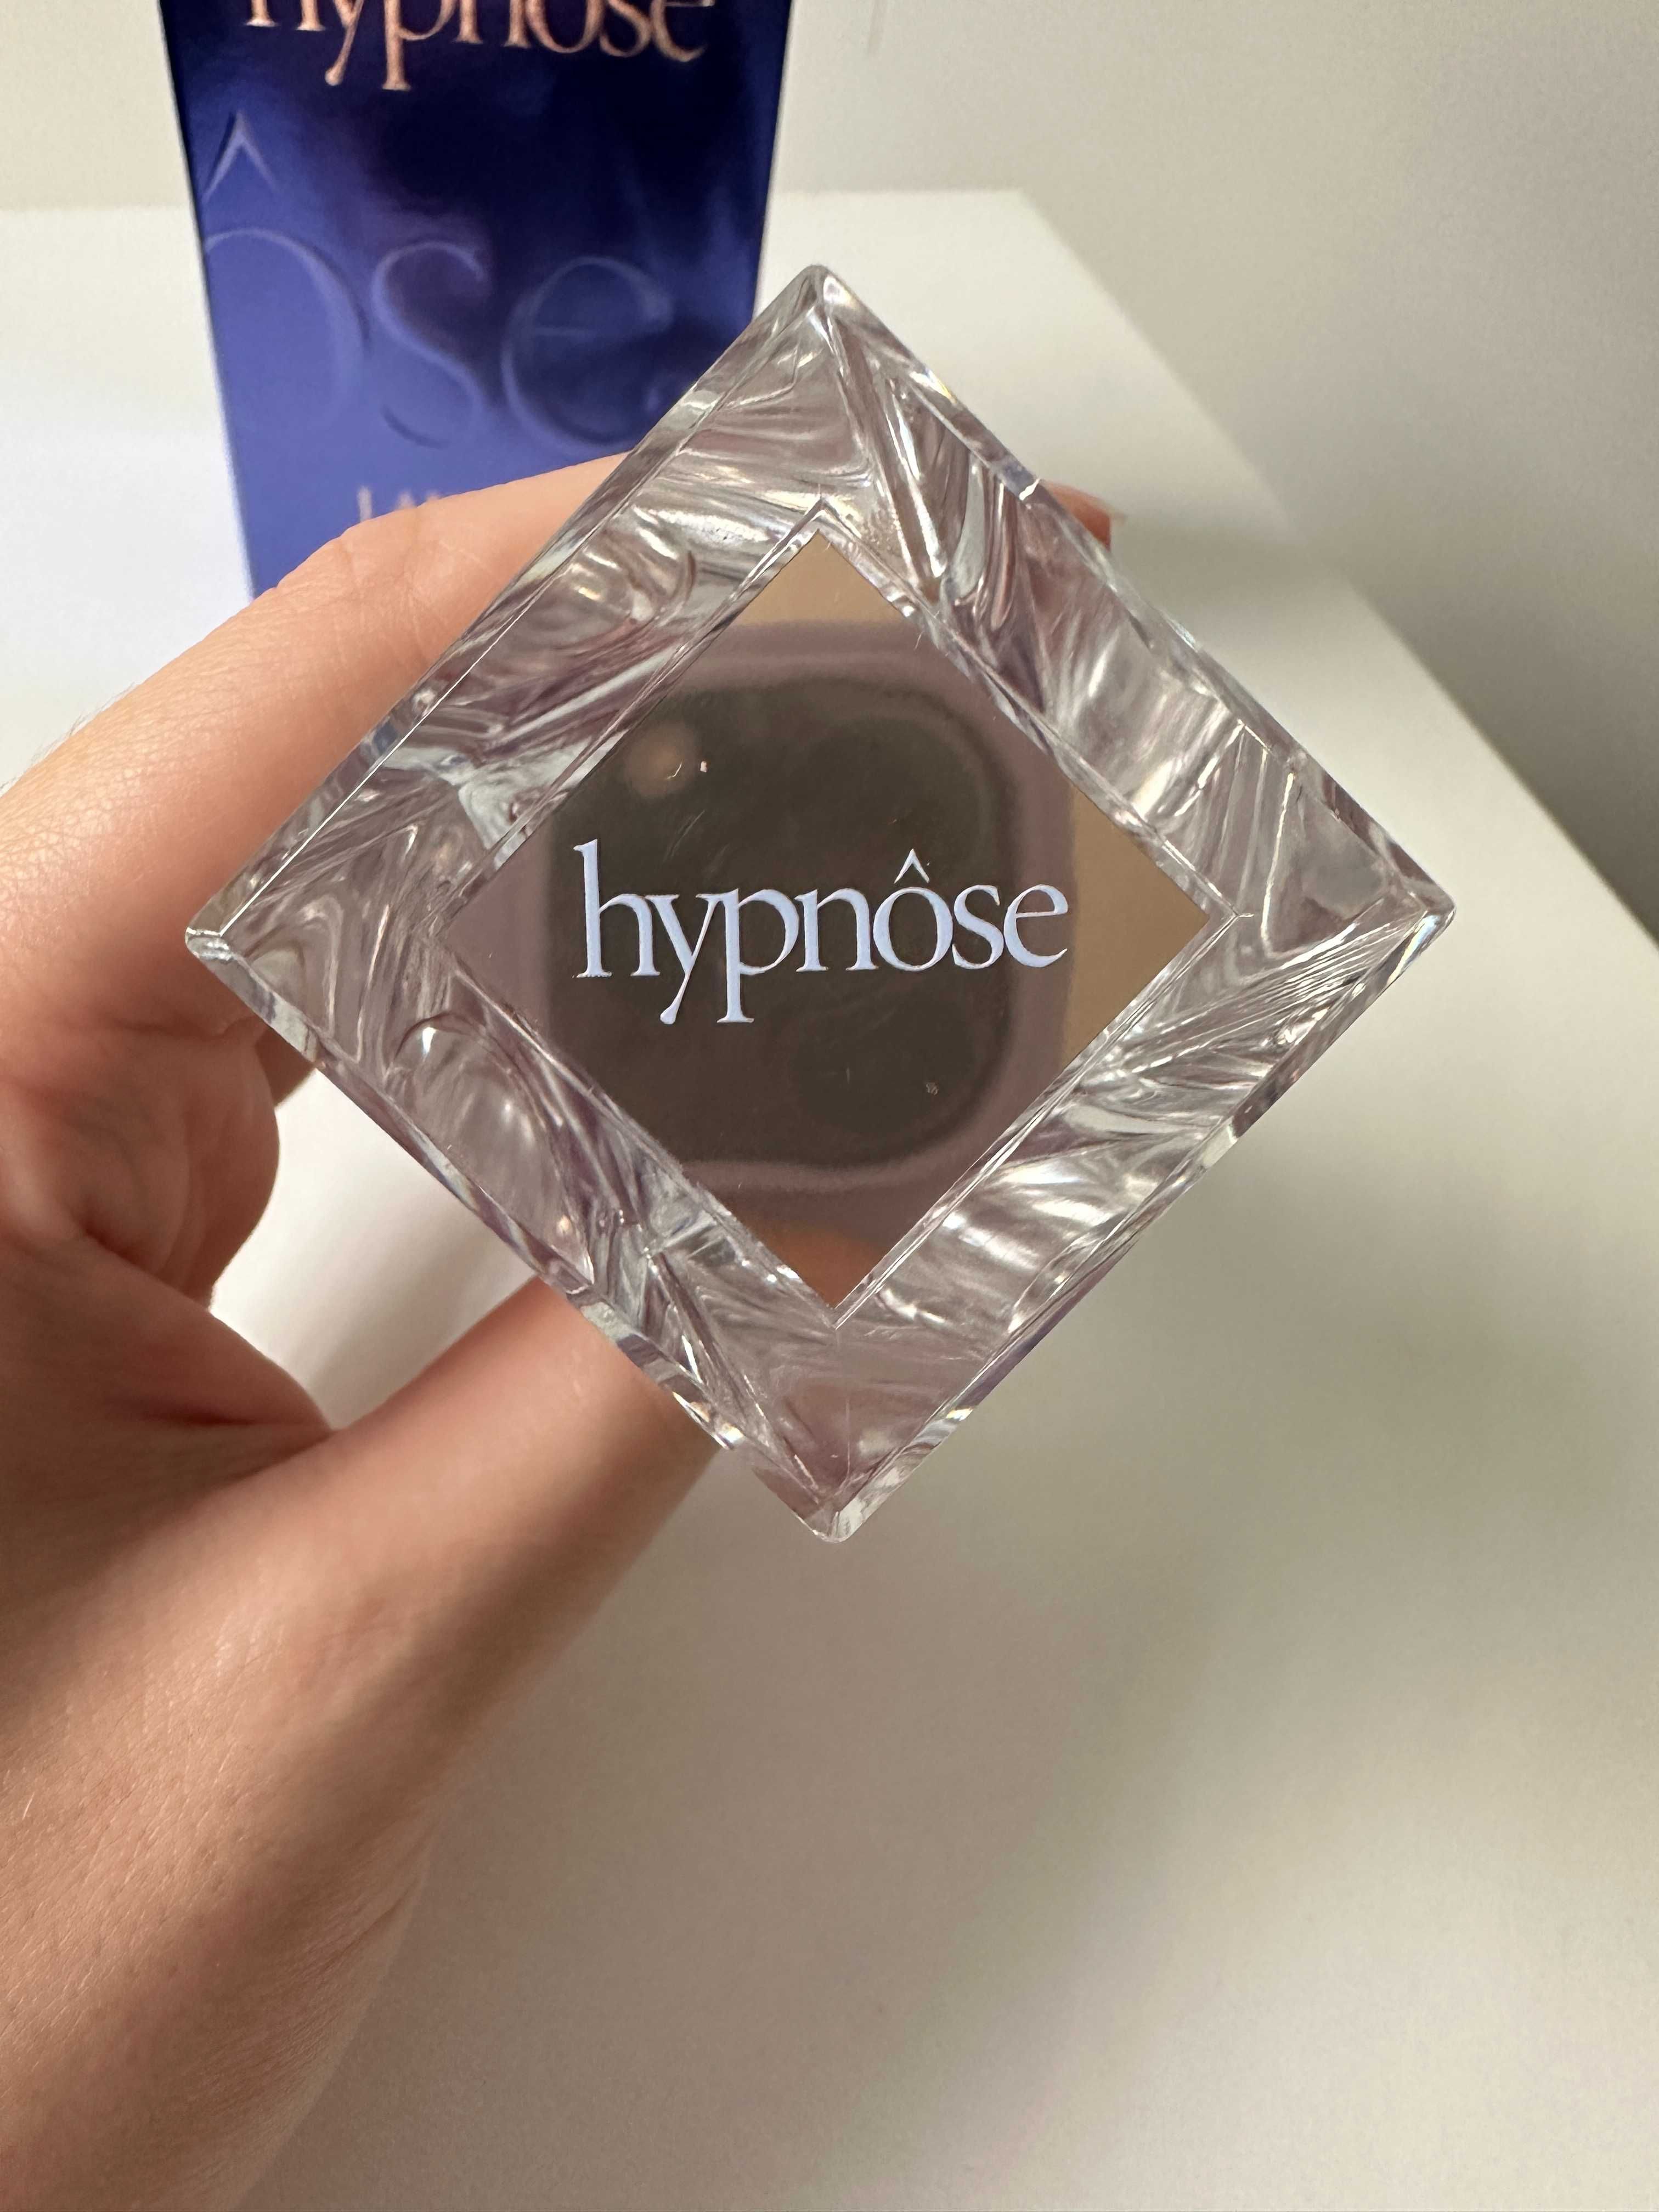 Lancome Hypnose Woman Eau de Parfum